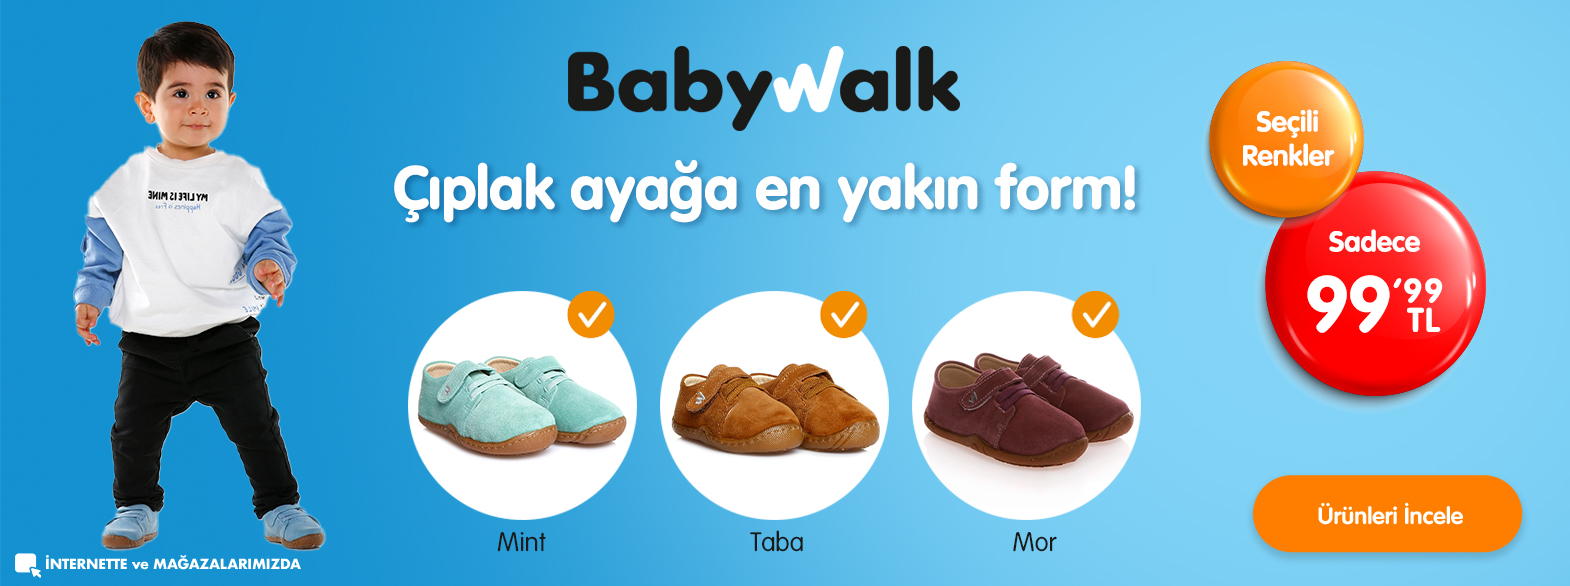 babywalk-banner.jpg